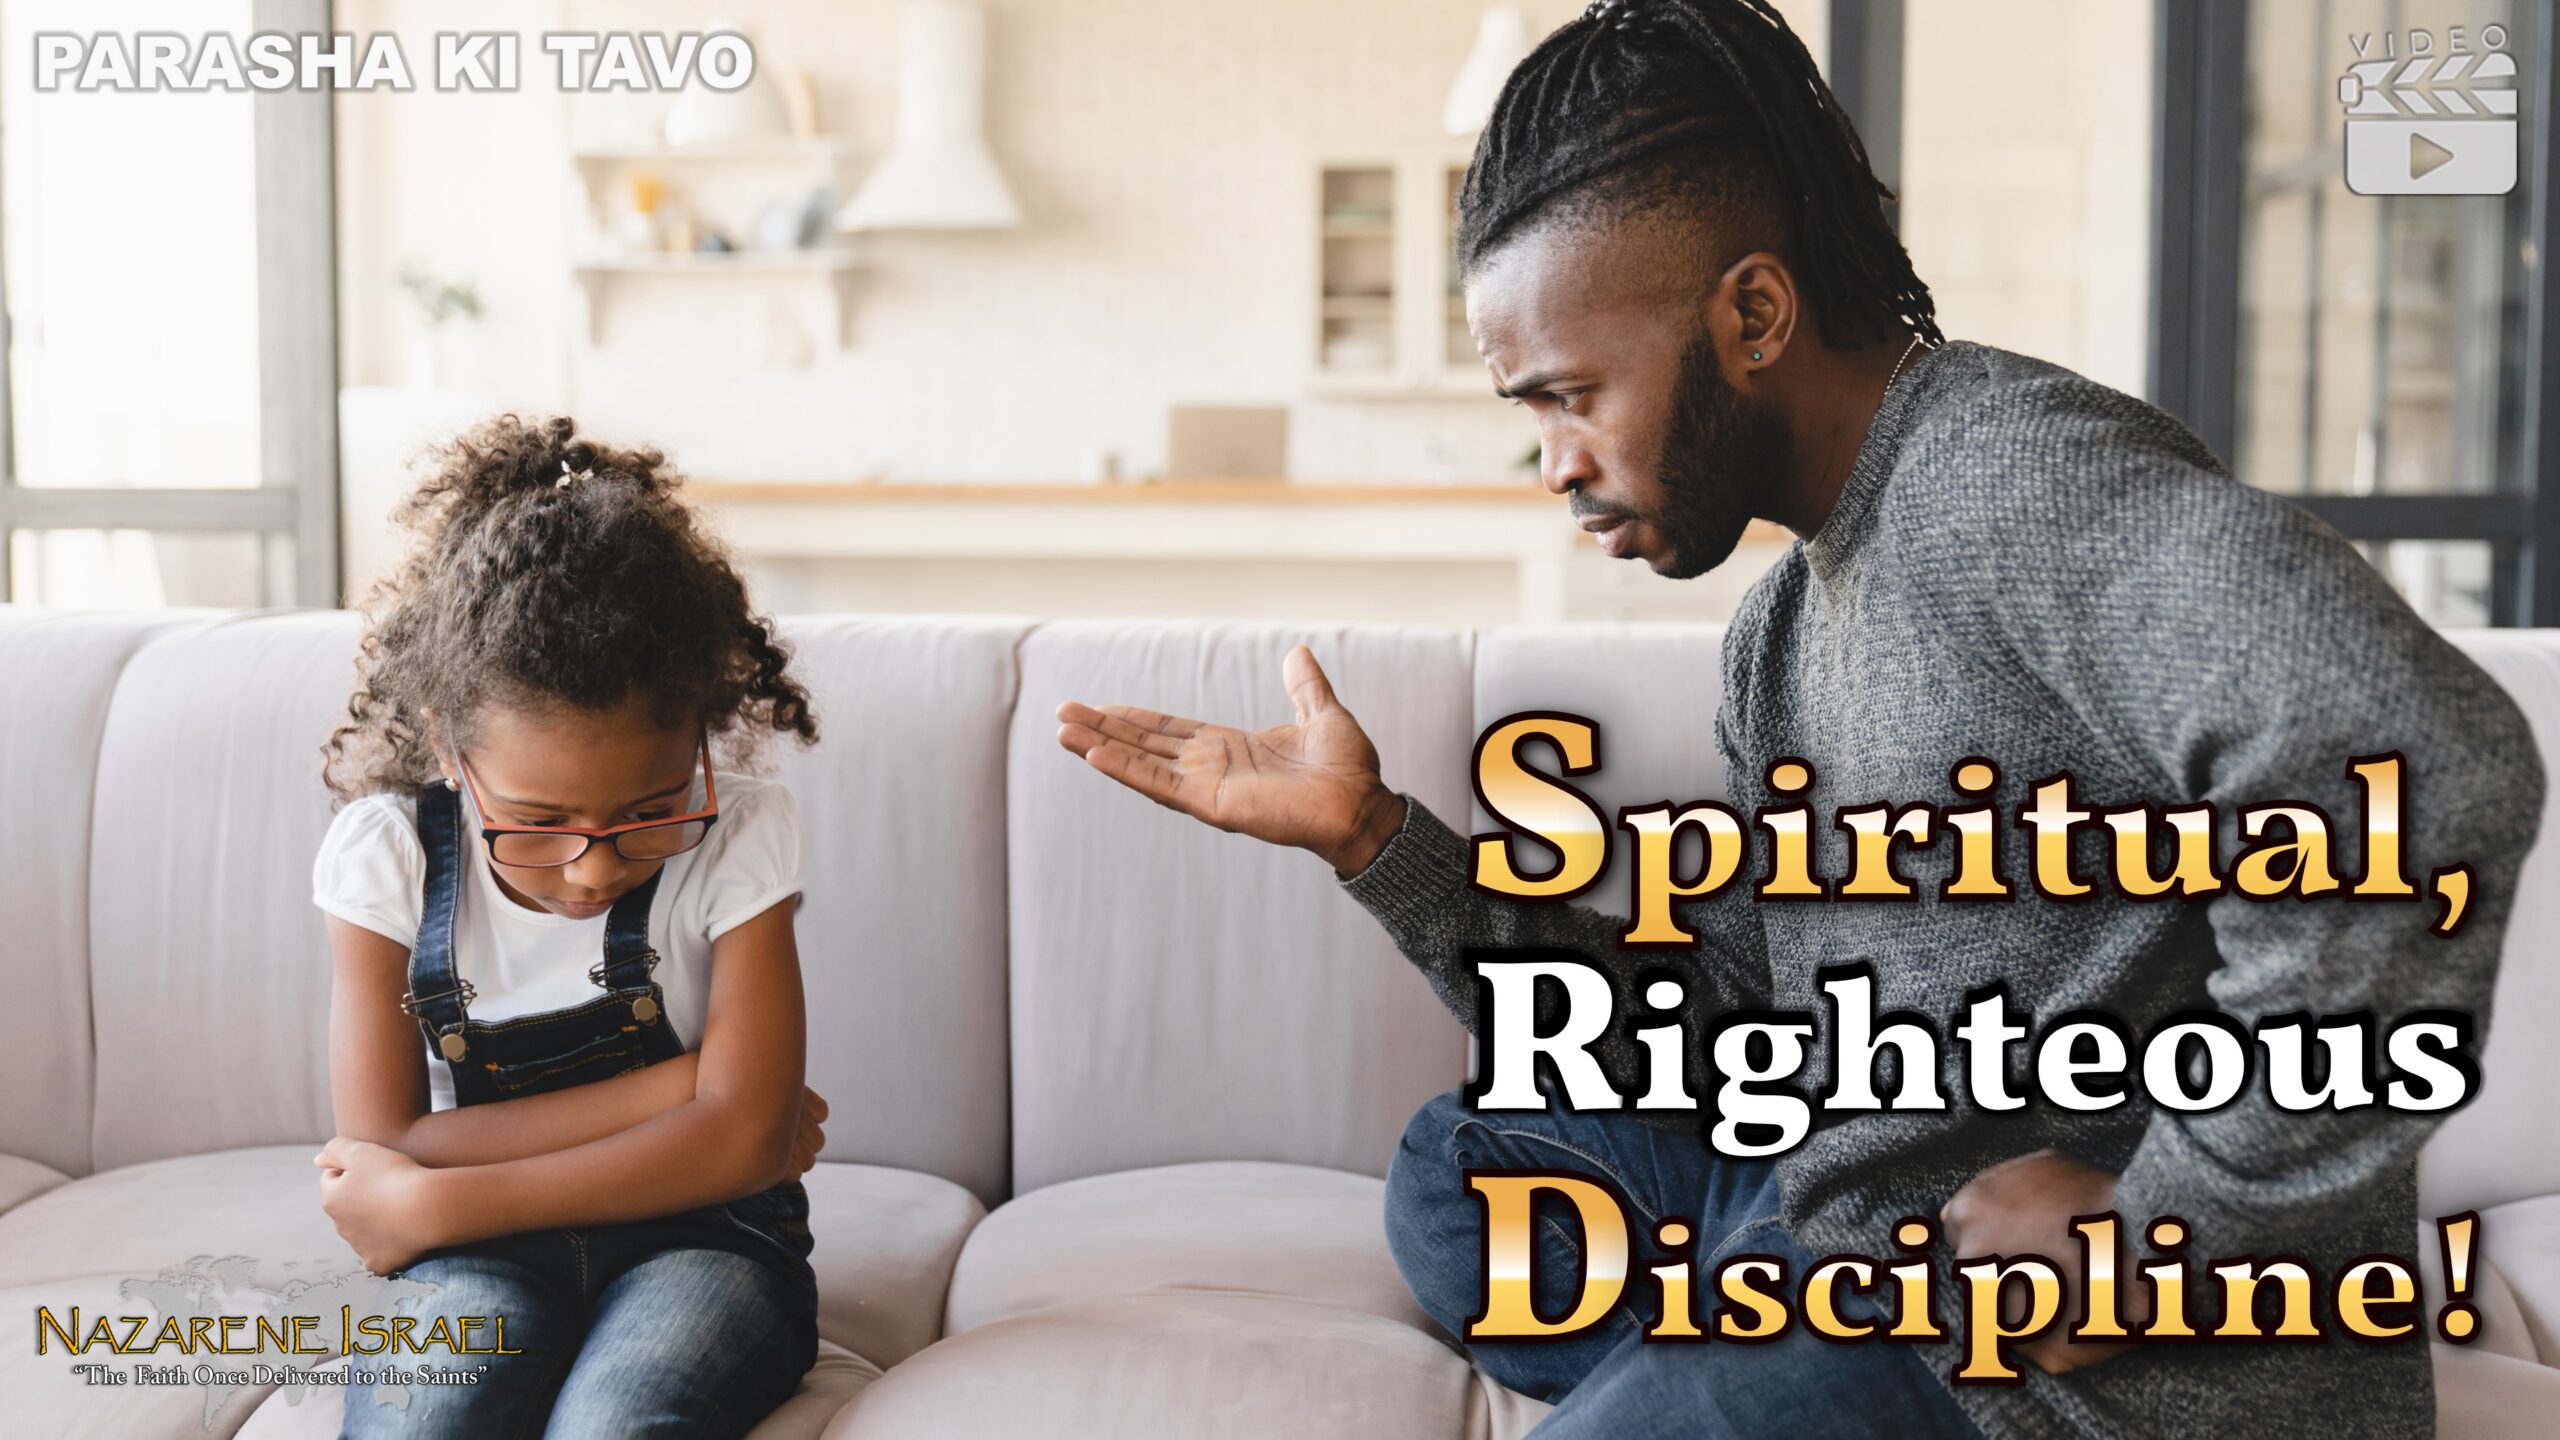 Parasha Ki Tavo 2022-23: Spiritual, Righteous Discipline!